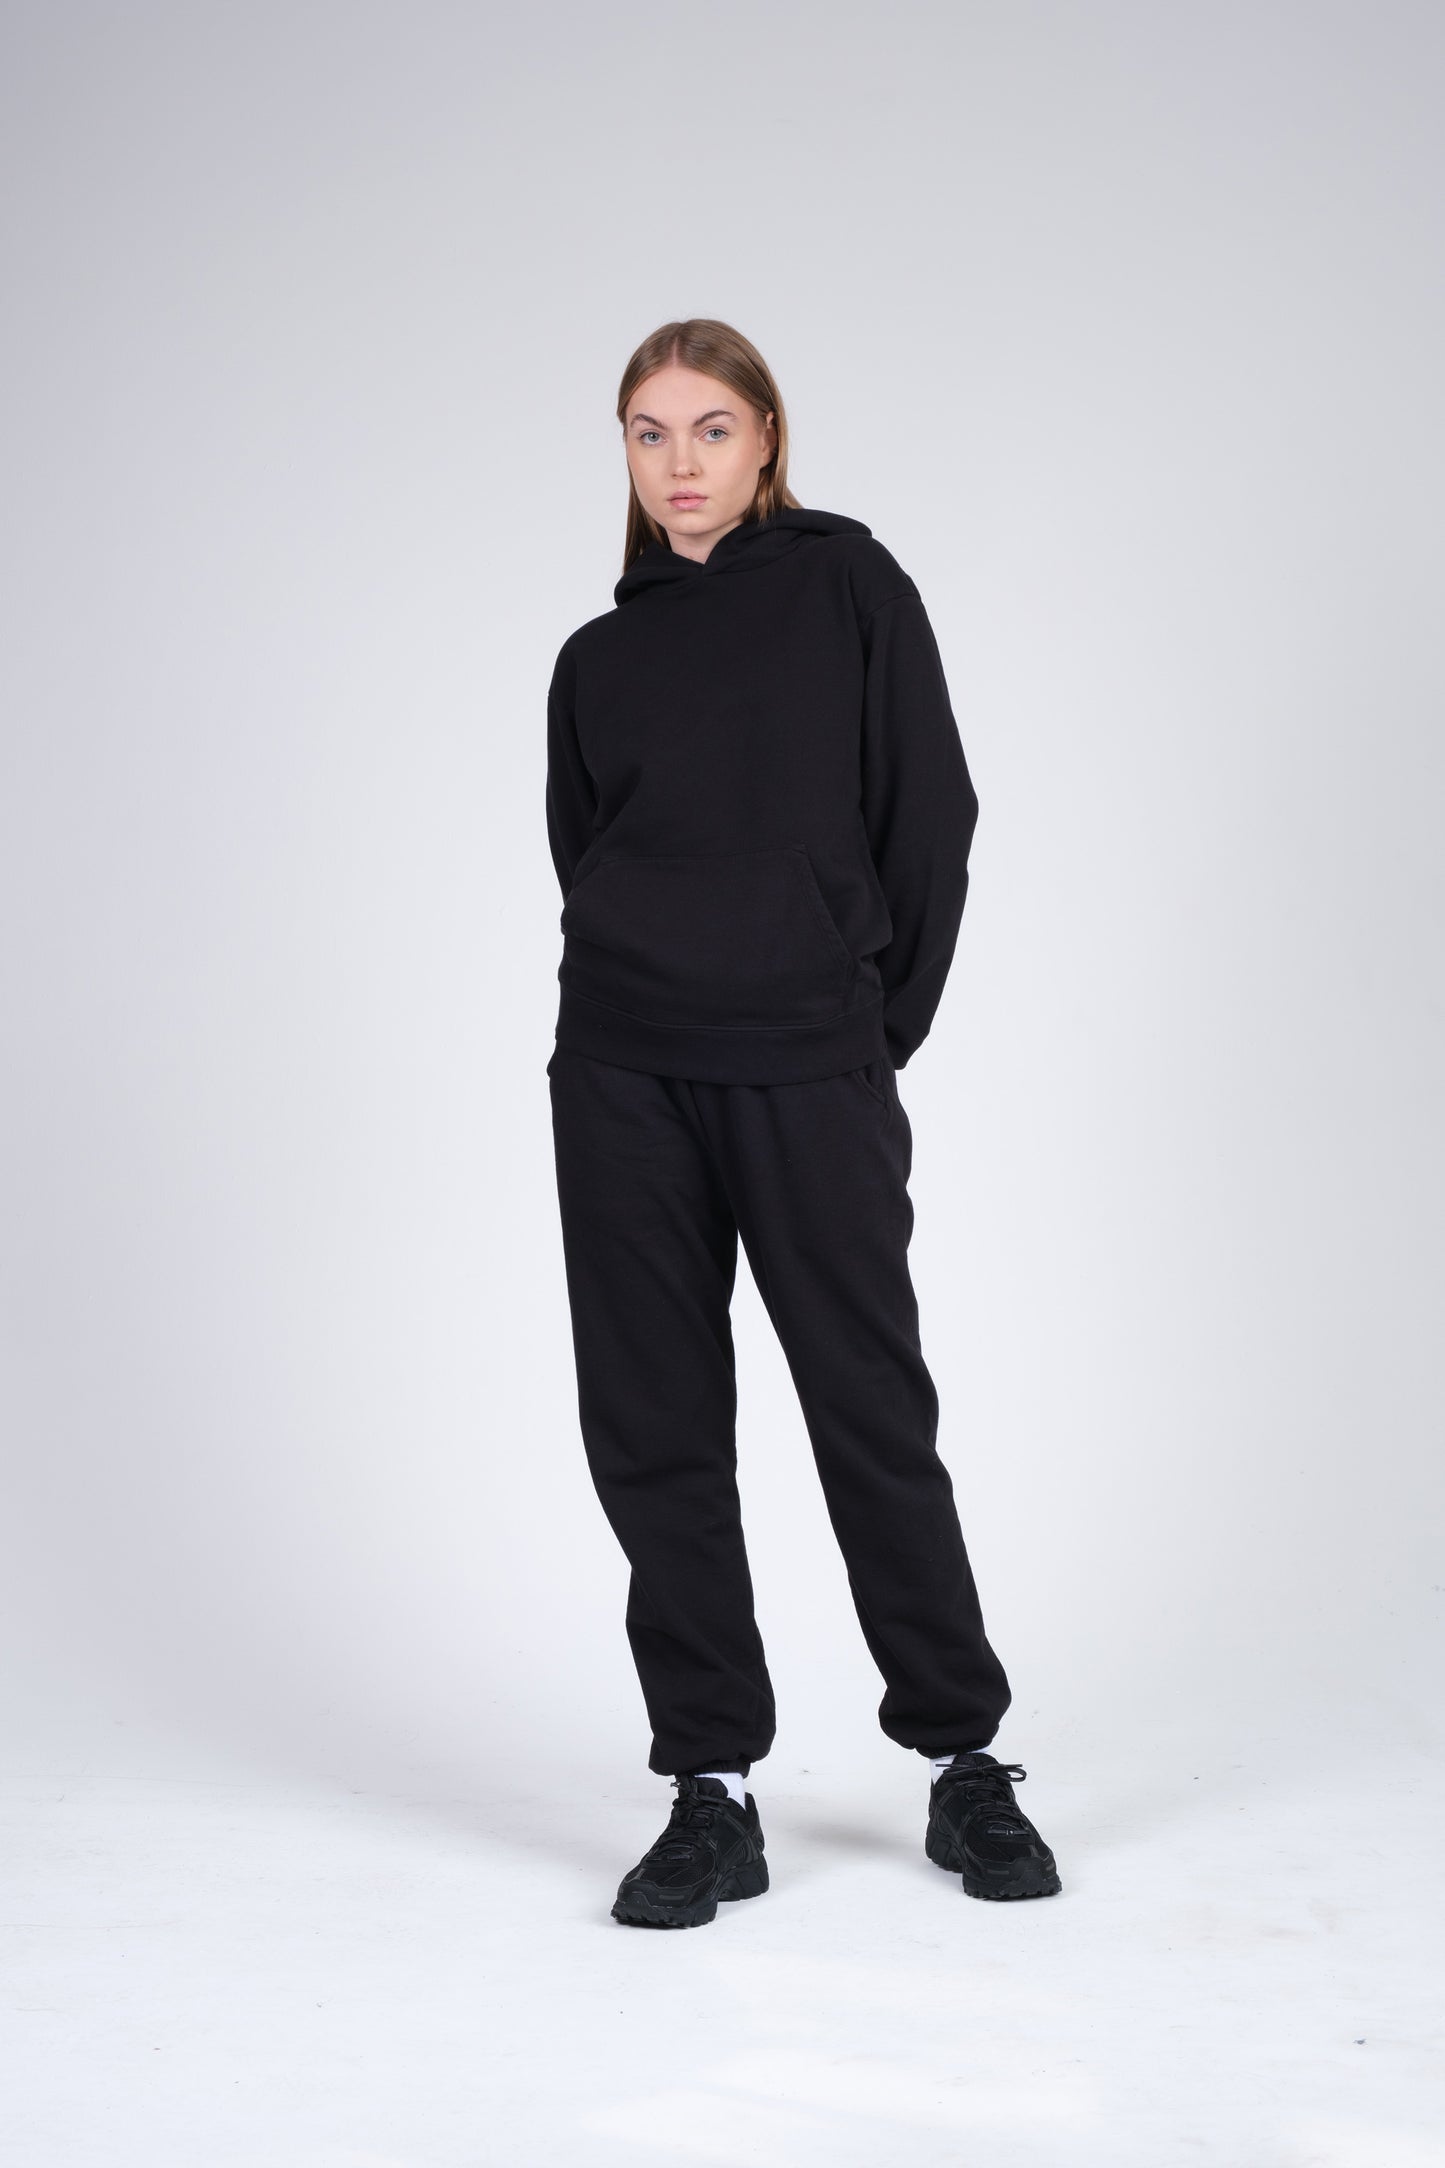 Sweatsuit in black for women in oversized fit